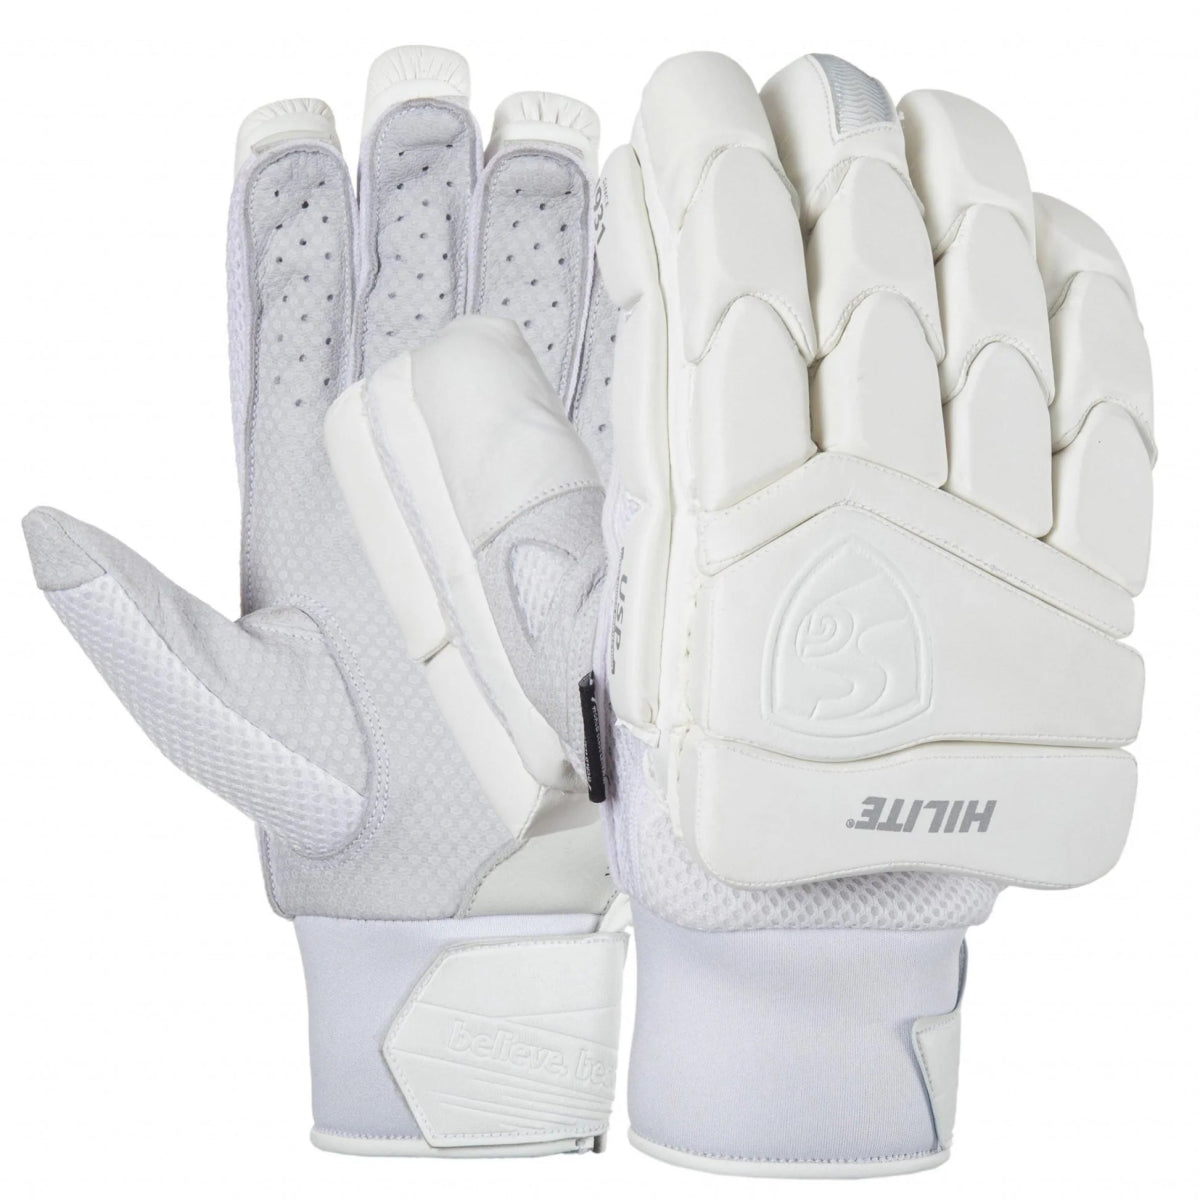 SG Hilite White Cricket Batting Gloves